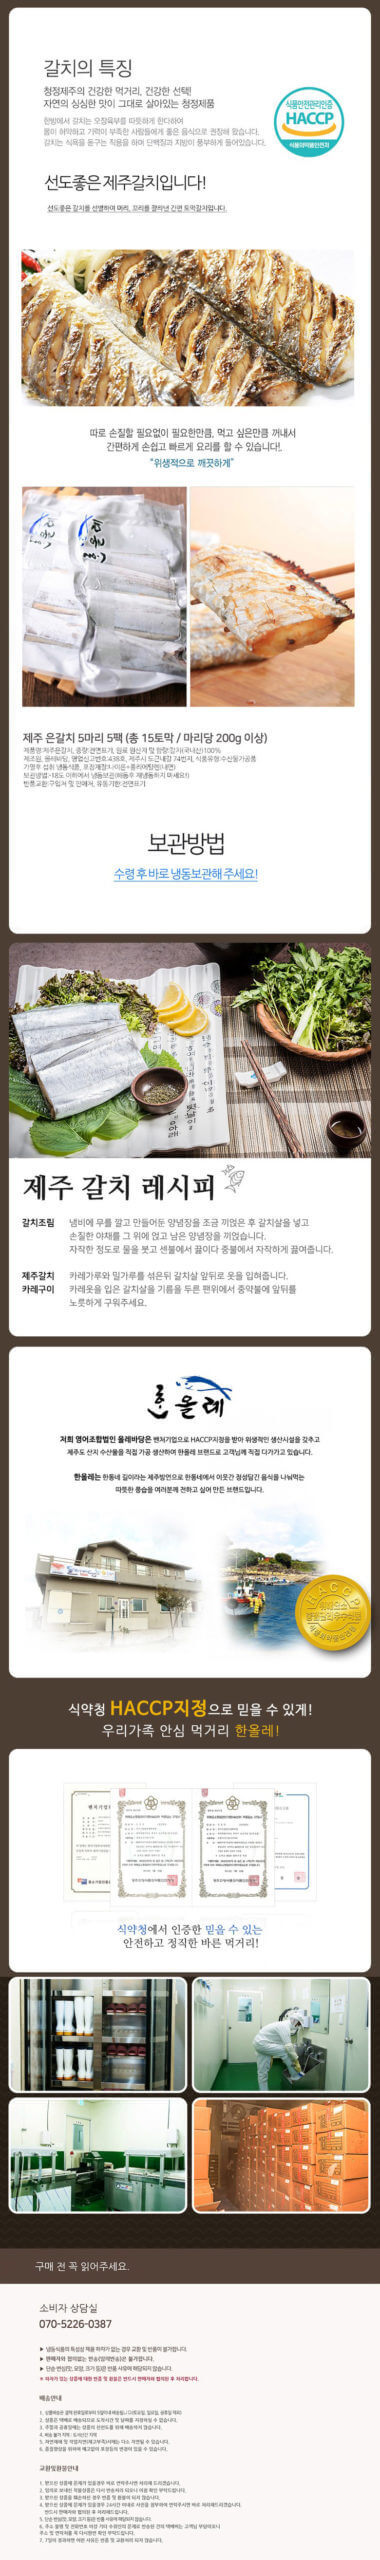 韓國食品-Jeju Hairtail 300g